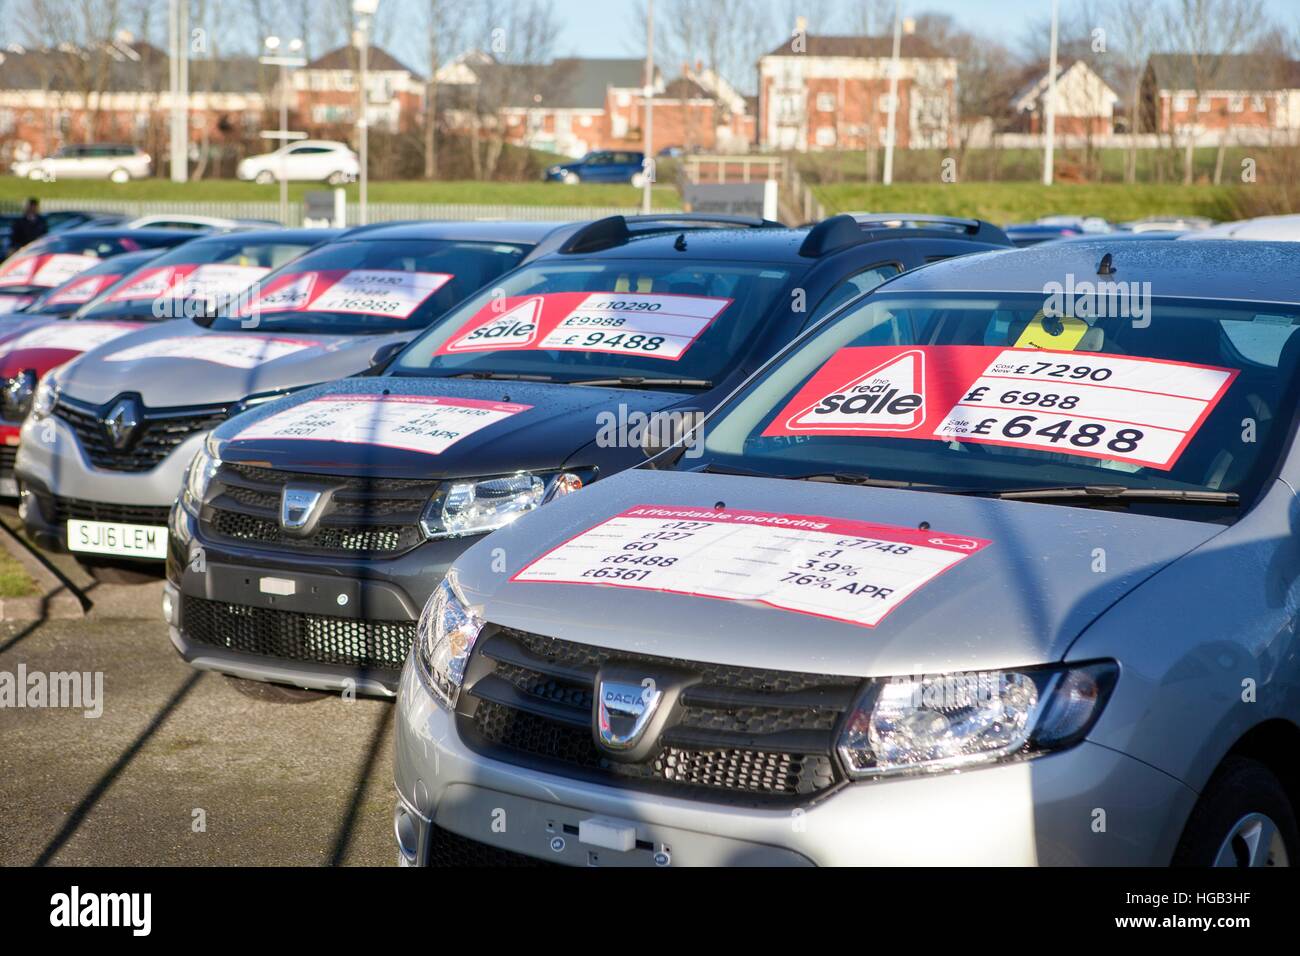 Dacia vehículos de descuento, berlina de segunda mano coches alineados en el precourt de garaje de coches usados con APR 'venta' adhesivos de oferta, Preston, Lancashire, Reino Unido. Foto de stock